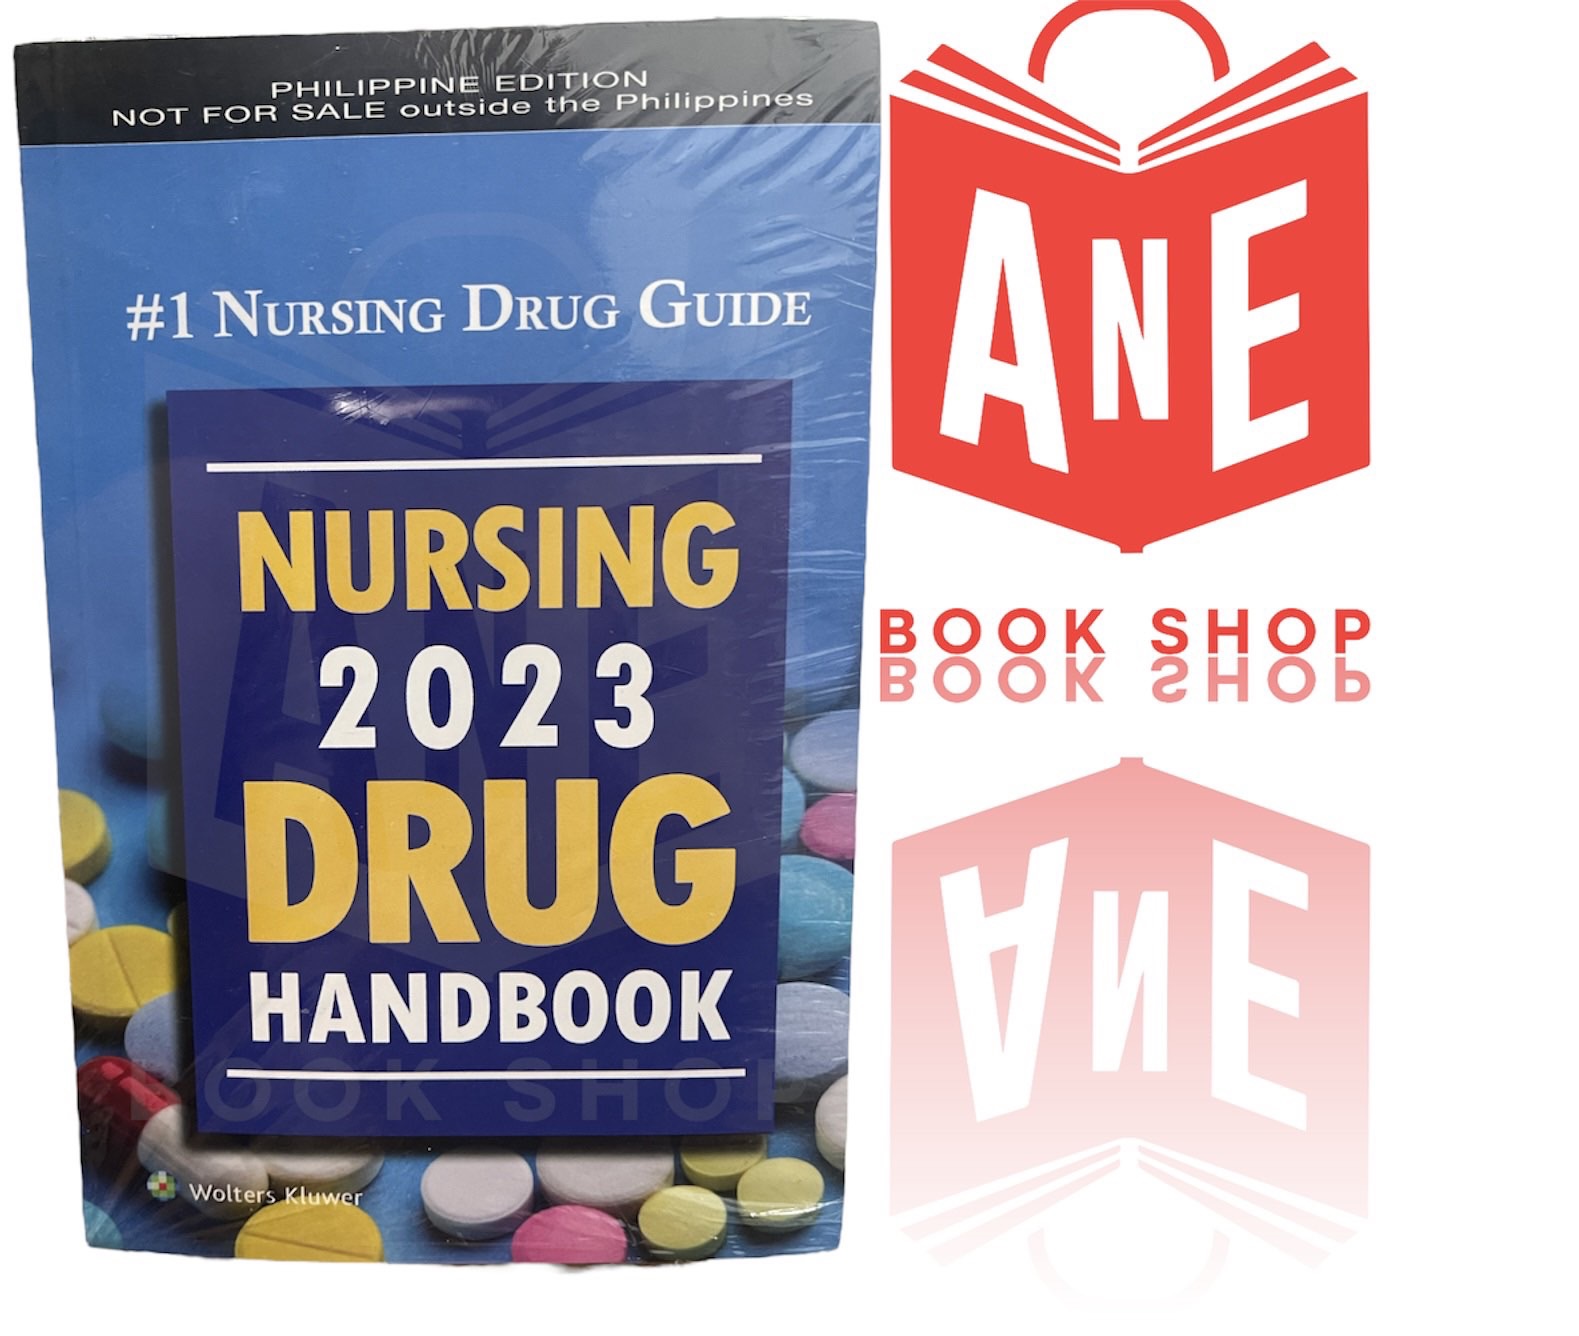 AUTHENTIC Nursing 2023 Drug Handbook by Wolters Kluwer Lazada PH